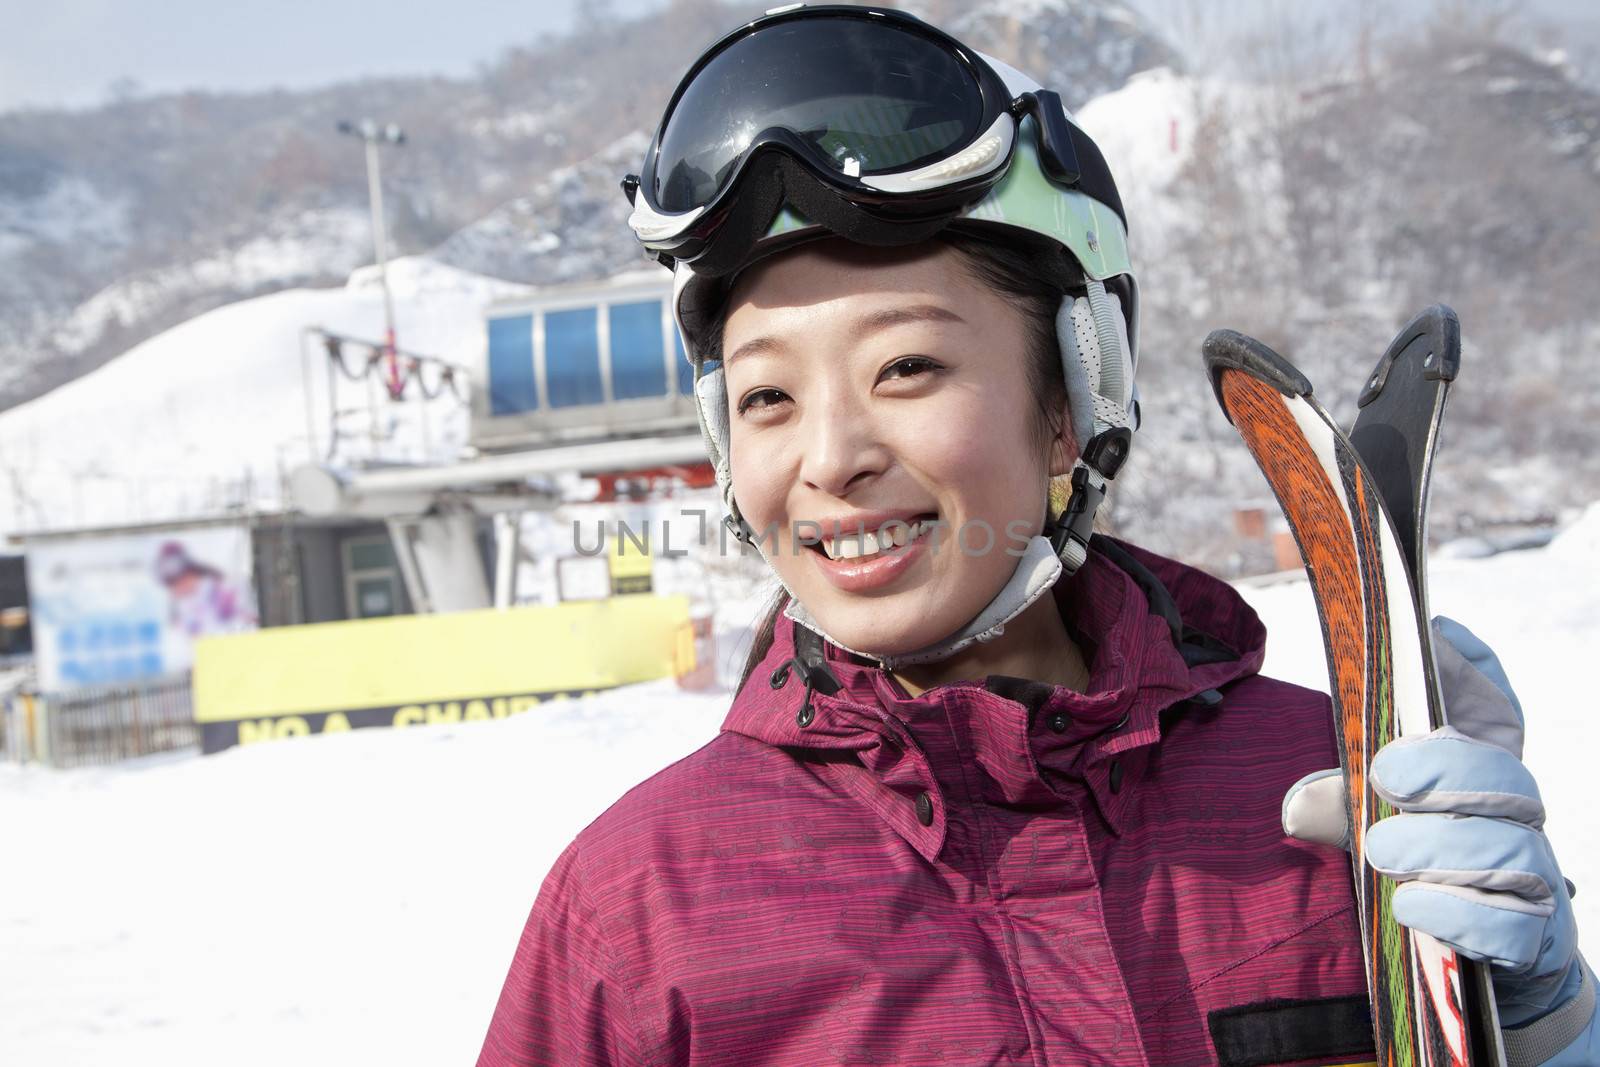 Smiling Woman in Ski Resort